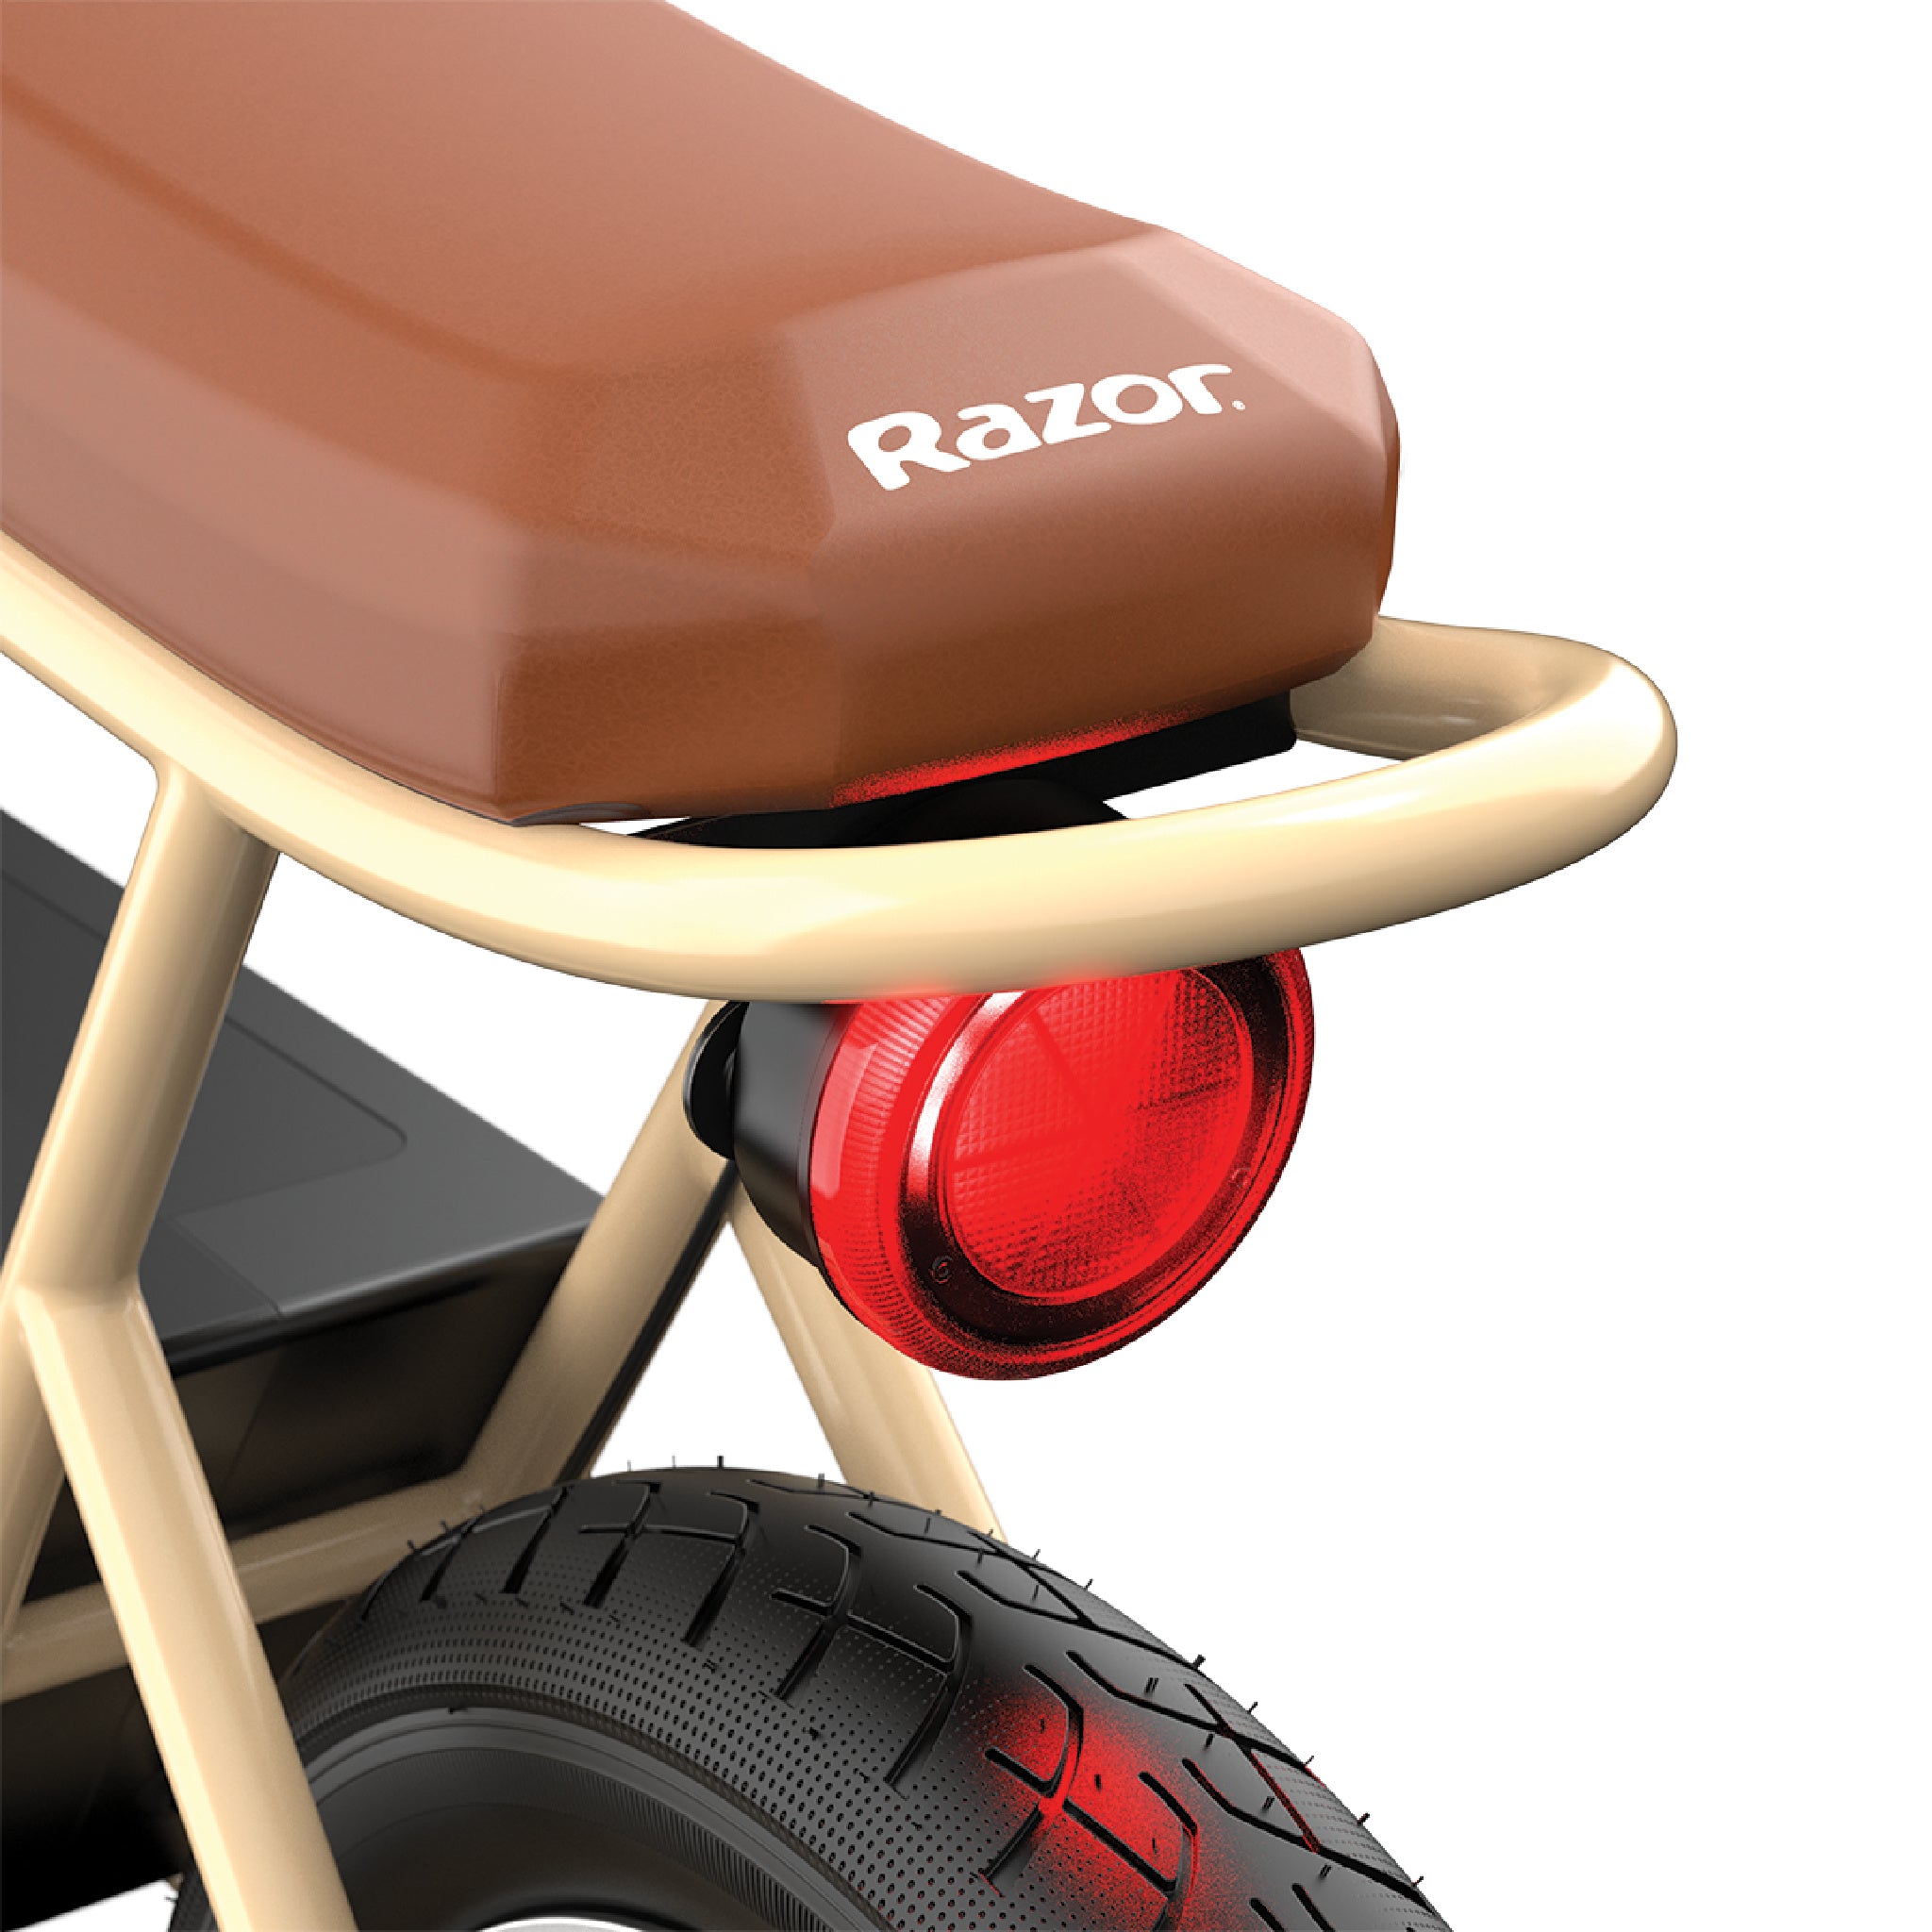 Razor Rambler 16 E-Bike - RideRazor 